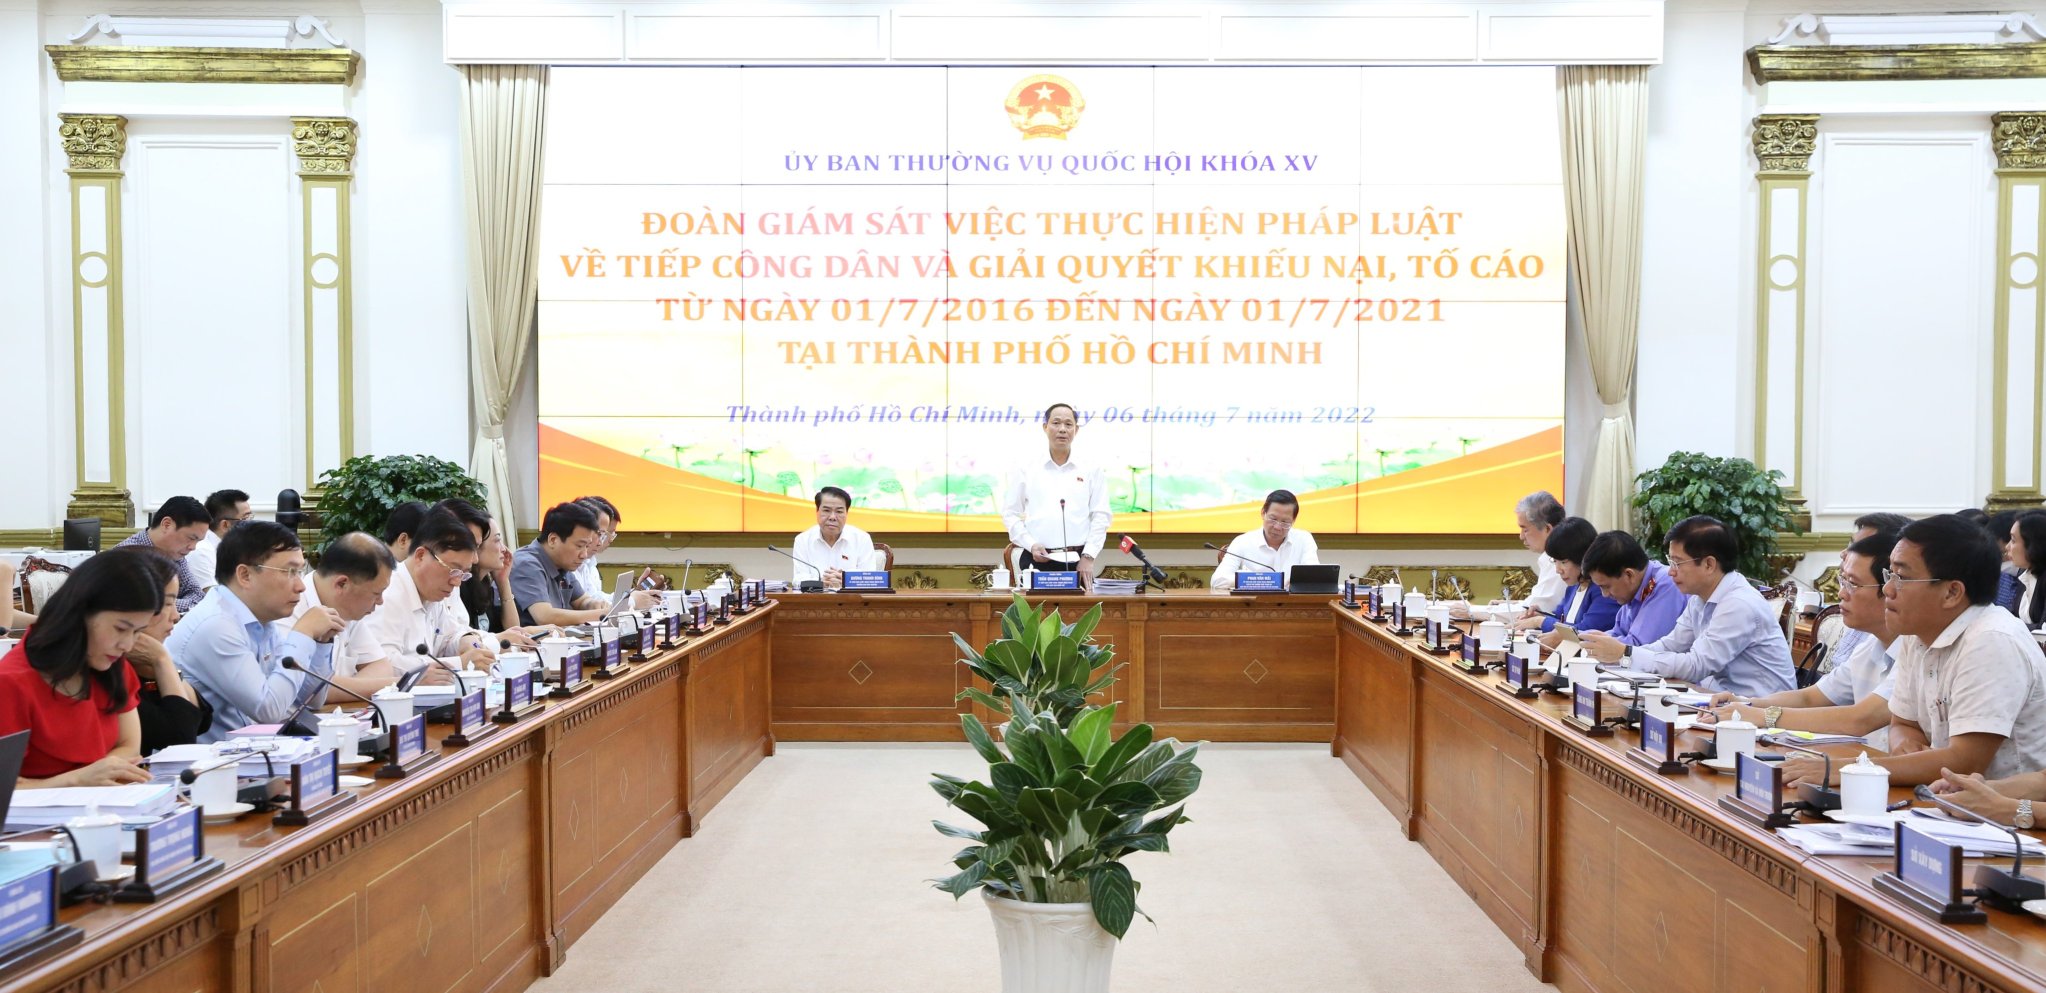 Phó Chủ tịch Quốc hội Trần Quang Phương: Thanh tra, kiểm tra để không từ cái mụn nhỏ thành cái ung lớn